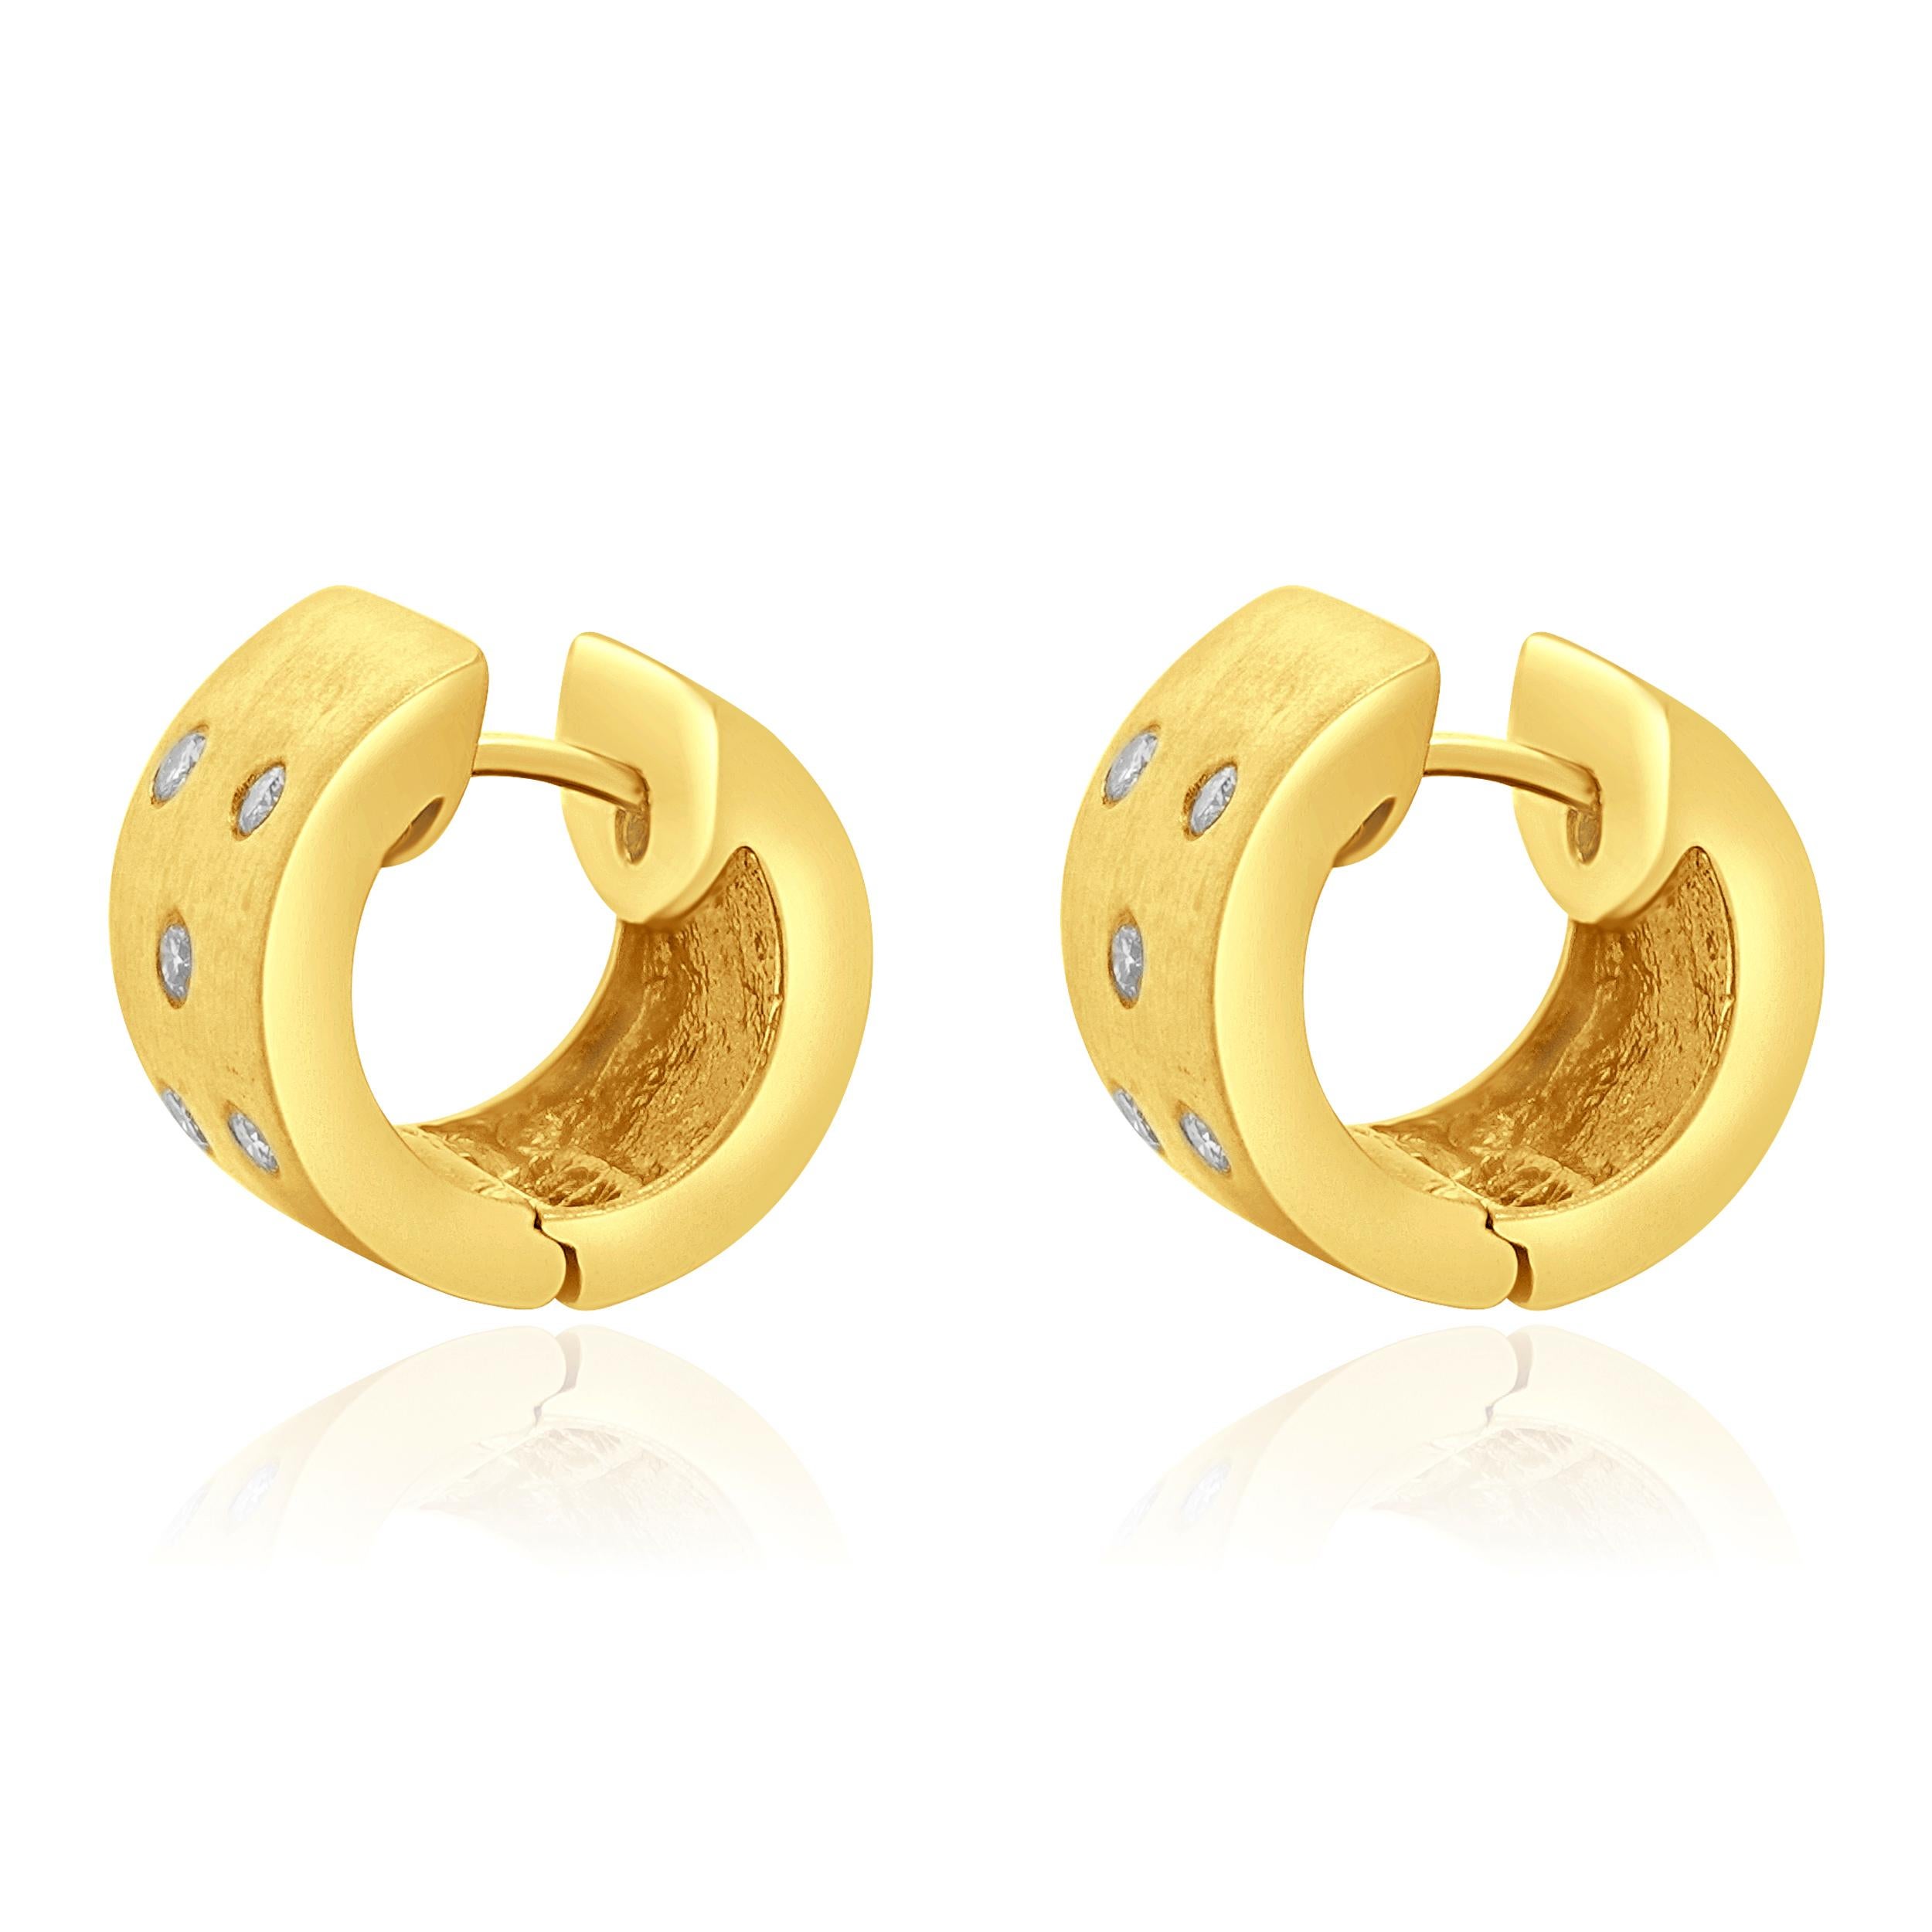 Designer : design personnalisé
Matériau : Or jaune 14K
Diamants : 10 diamants ronds de taille brillant =0.15cttw
Couleur : H 
Clarté : SI1-2
Dimensions : les boucles d'oreilles mesurent 8.60 mm 
Poids : 8.63 grammes
